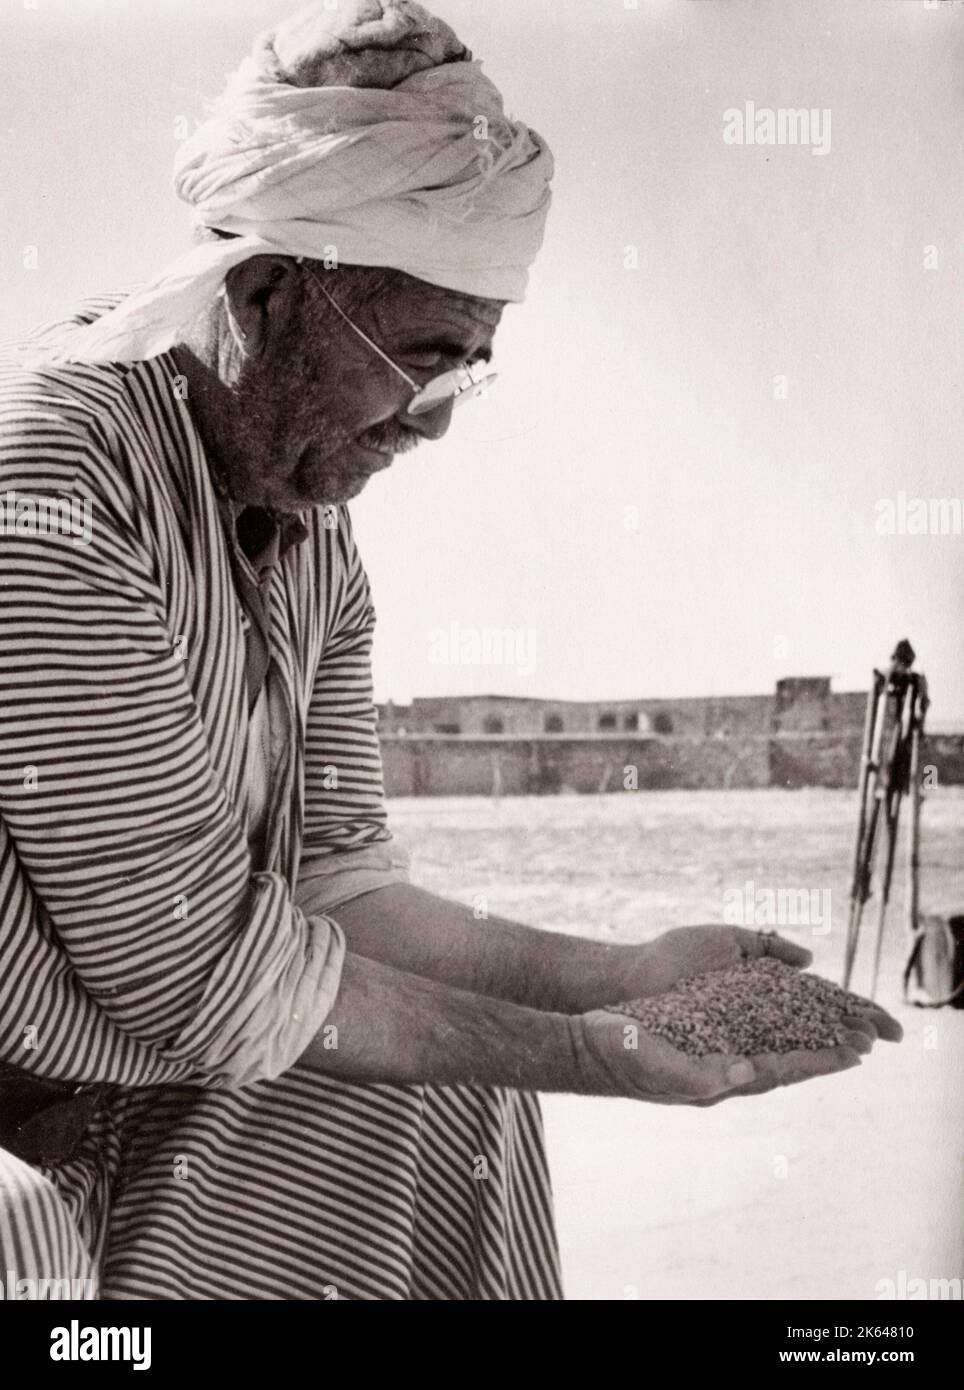 1943 - Syrie - Homs - un homme qui classe le grain de blé Photographie par un officier de recrutement de l'armée britannique stationnés en Afrique de l'est et au Moyen-Orient pendant la Seconde Guerre mondiale Banque D'Images